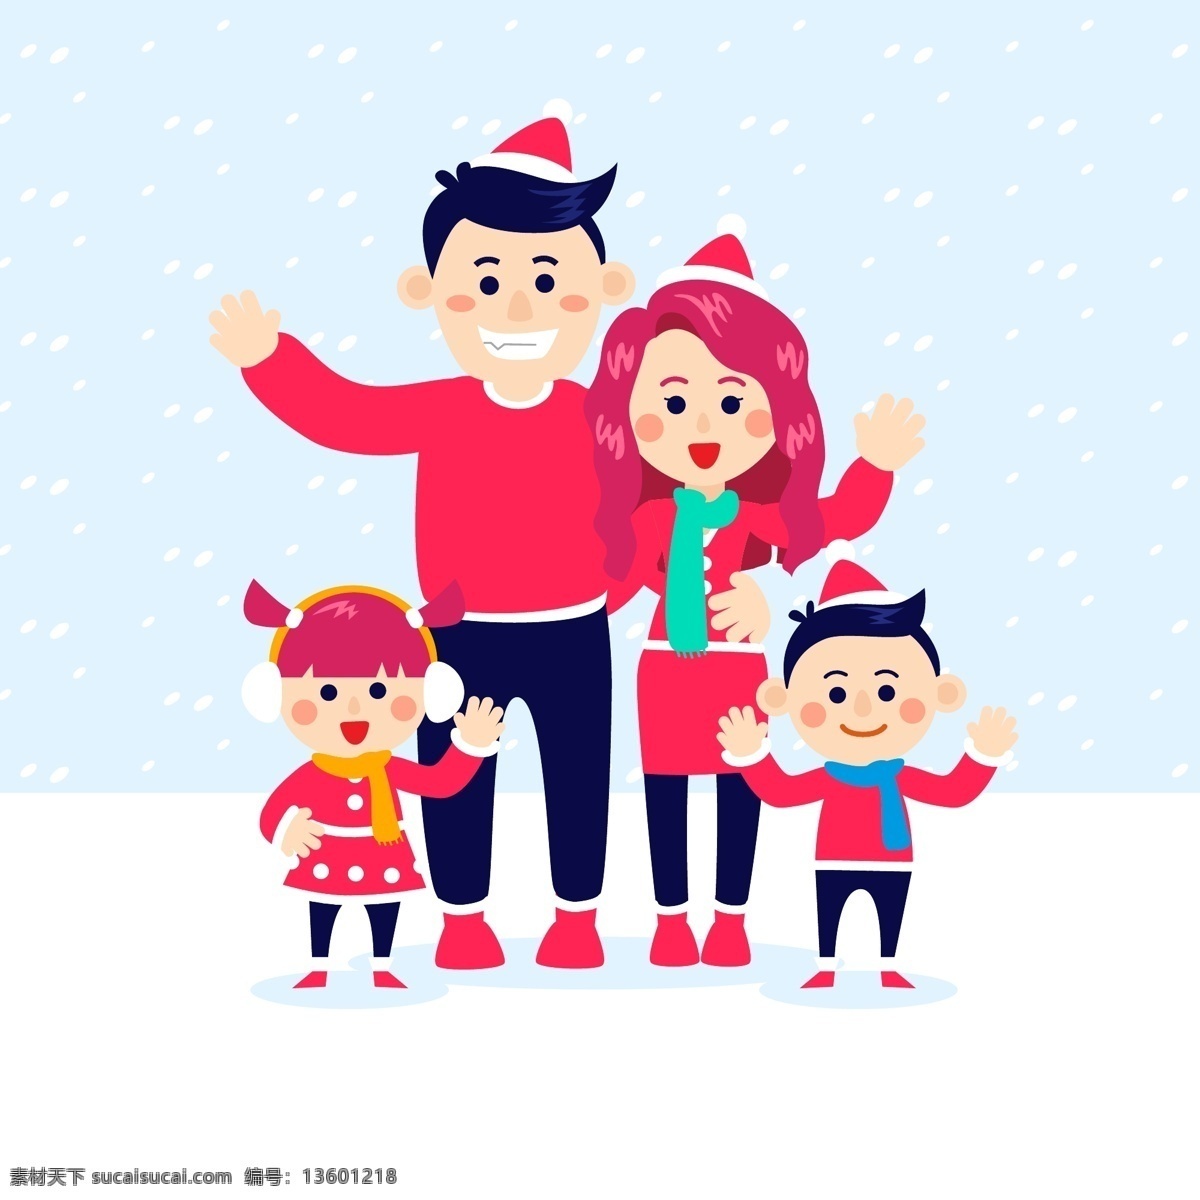 圣诞节 装扮 家庭 人物 节日 卡通 过节 庆祝 狂欢 西方节日 假期 扁平 矢量 家人